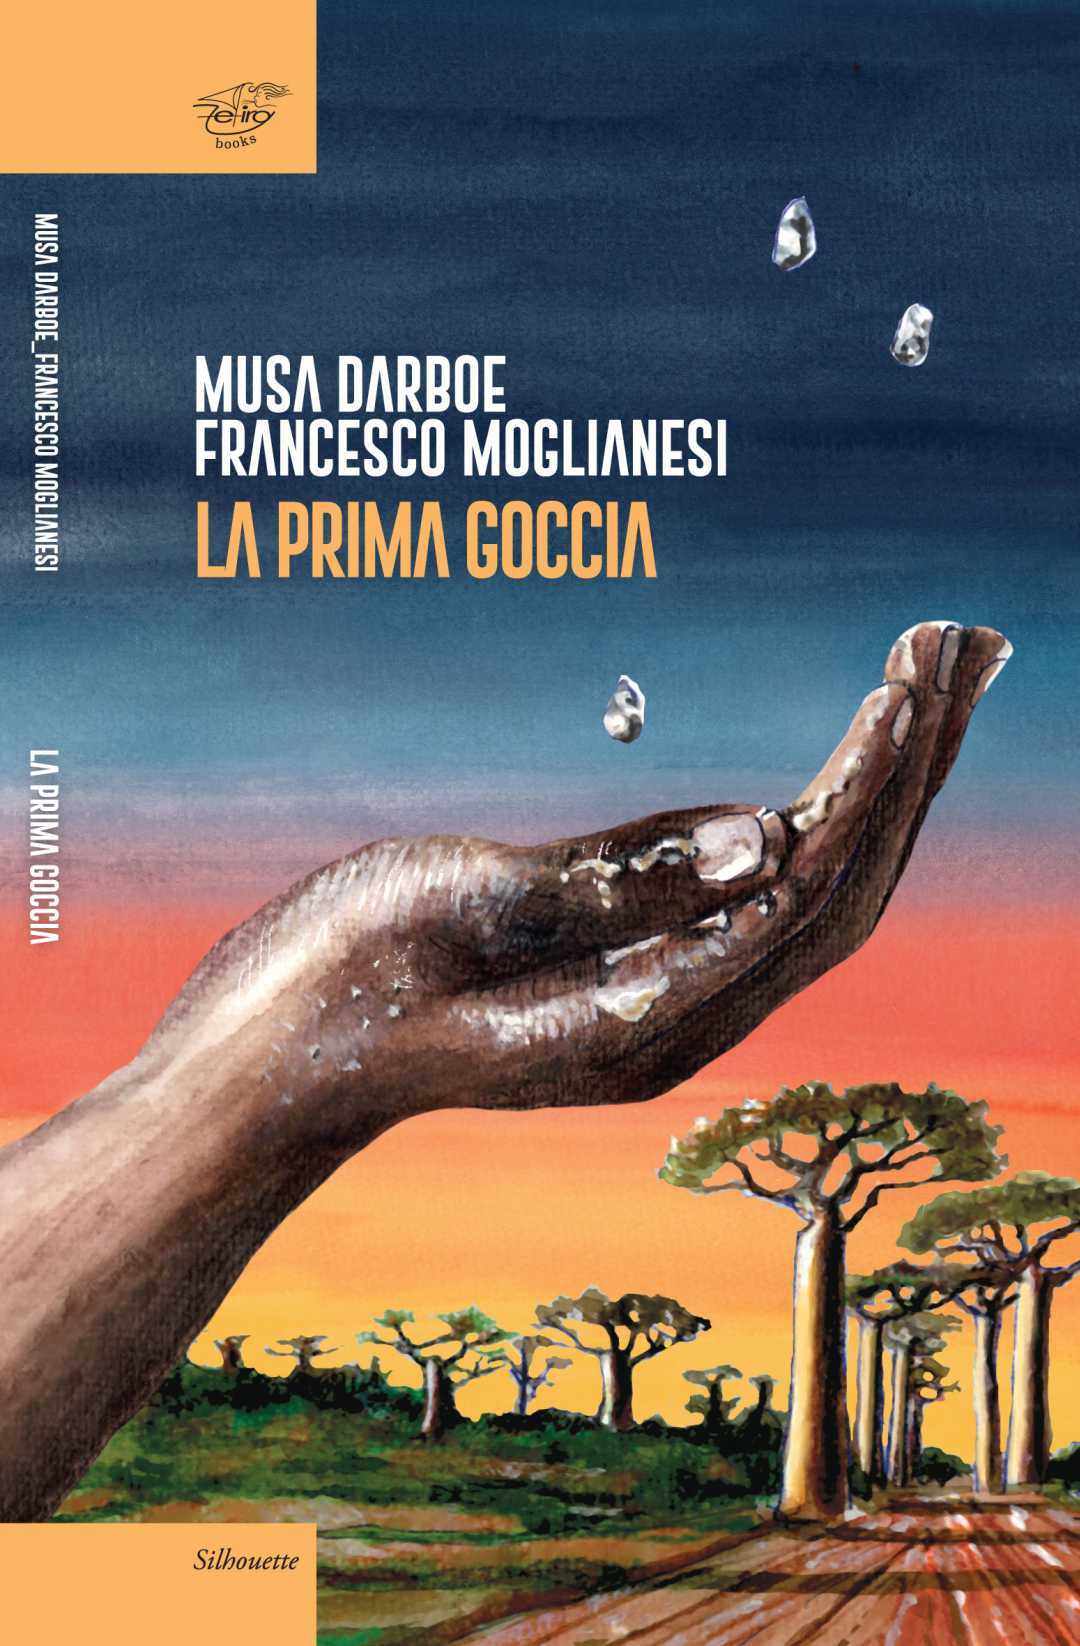 Musa Darboe e Francesco Moglianesi, “La prima goccia”